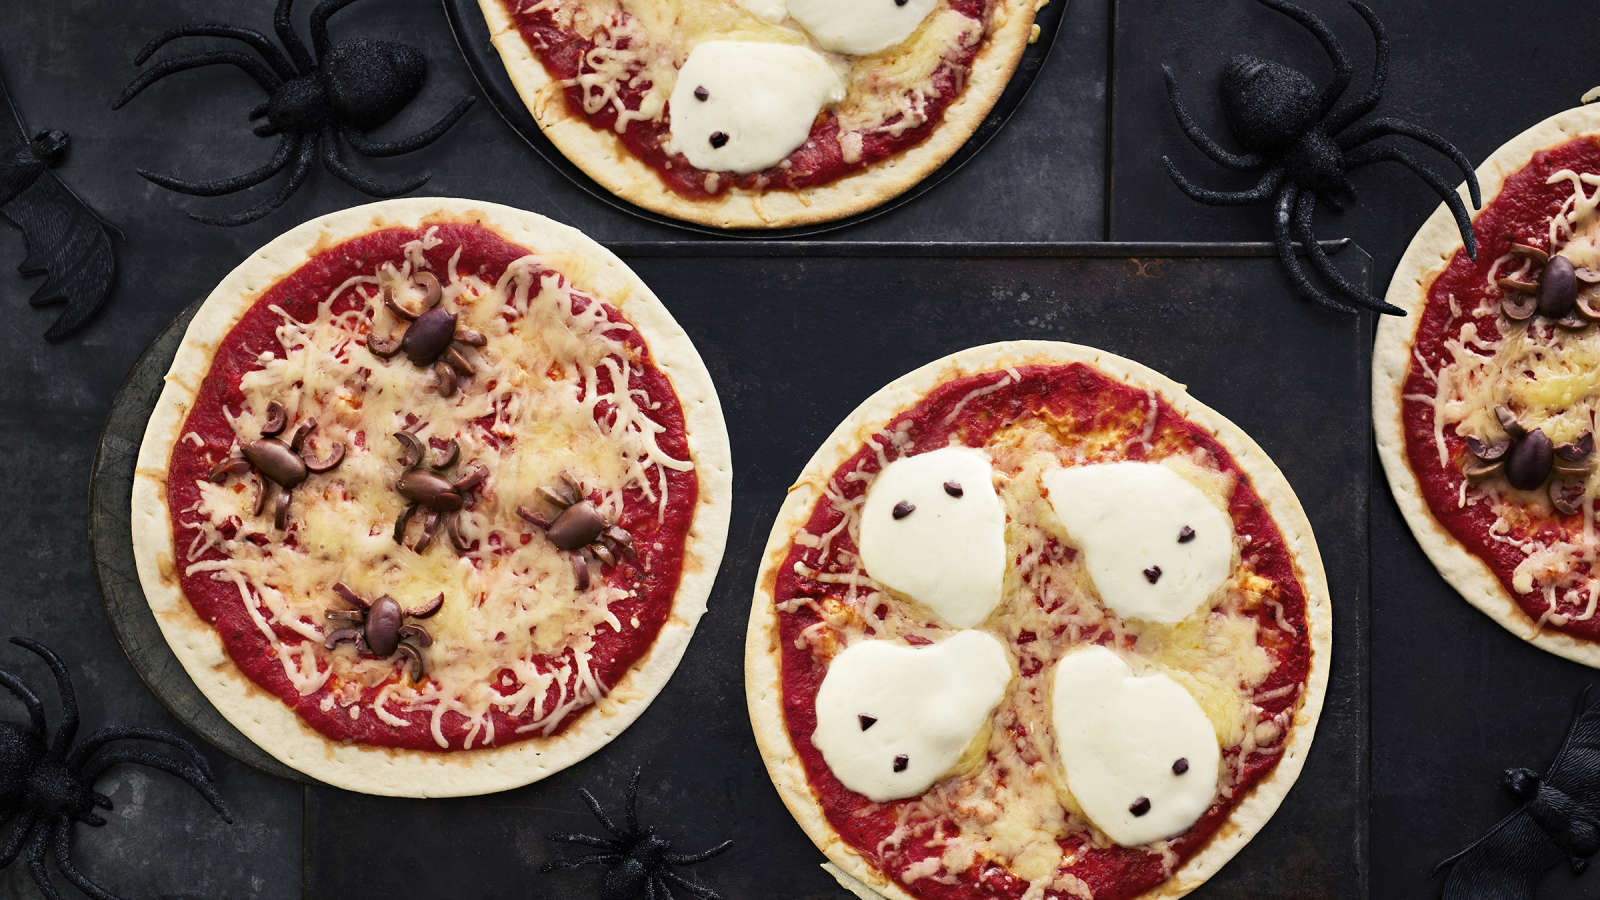 Halloweeniin sopivia pizzoja, joiden päälle asetellut oliivit muistuttavat hämähäkkejä ja mozzarellaviipaleet haamuja.